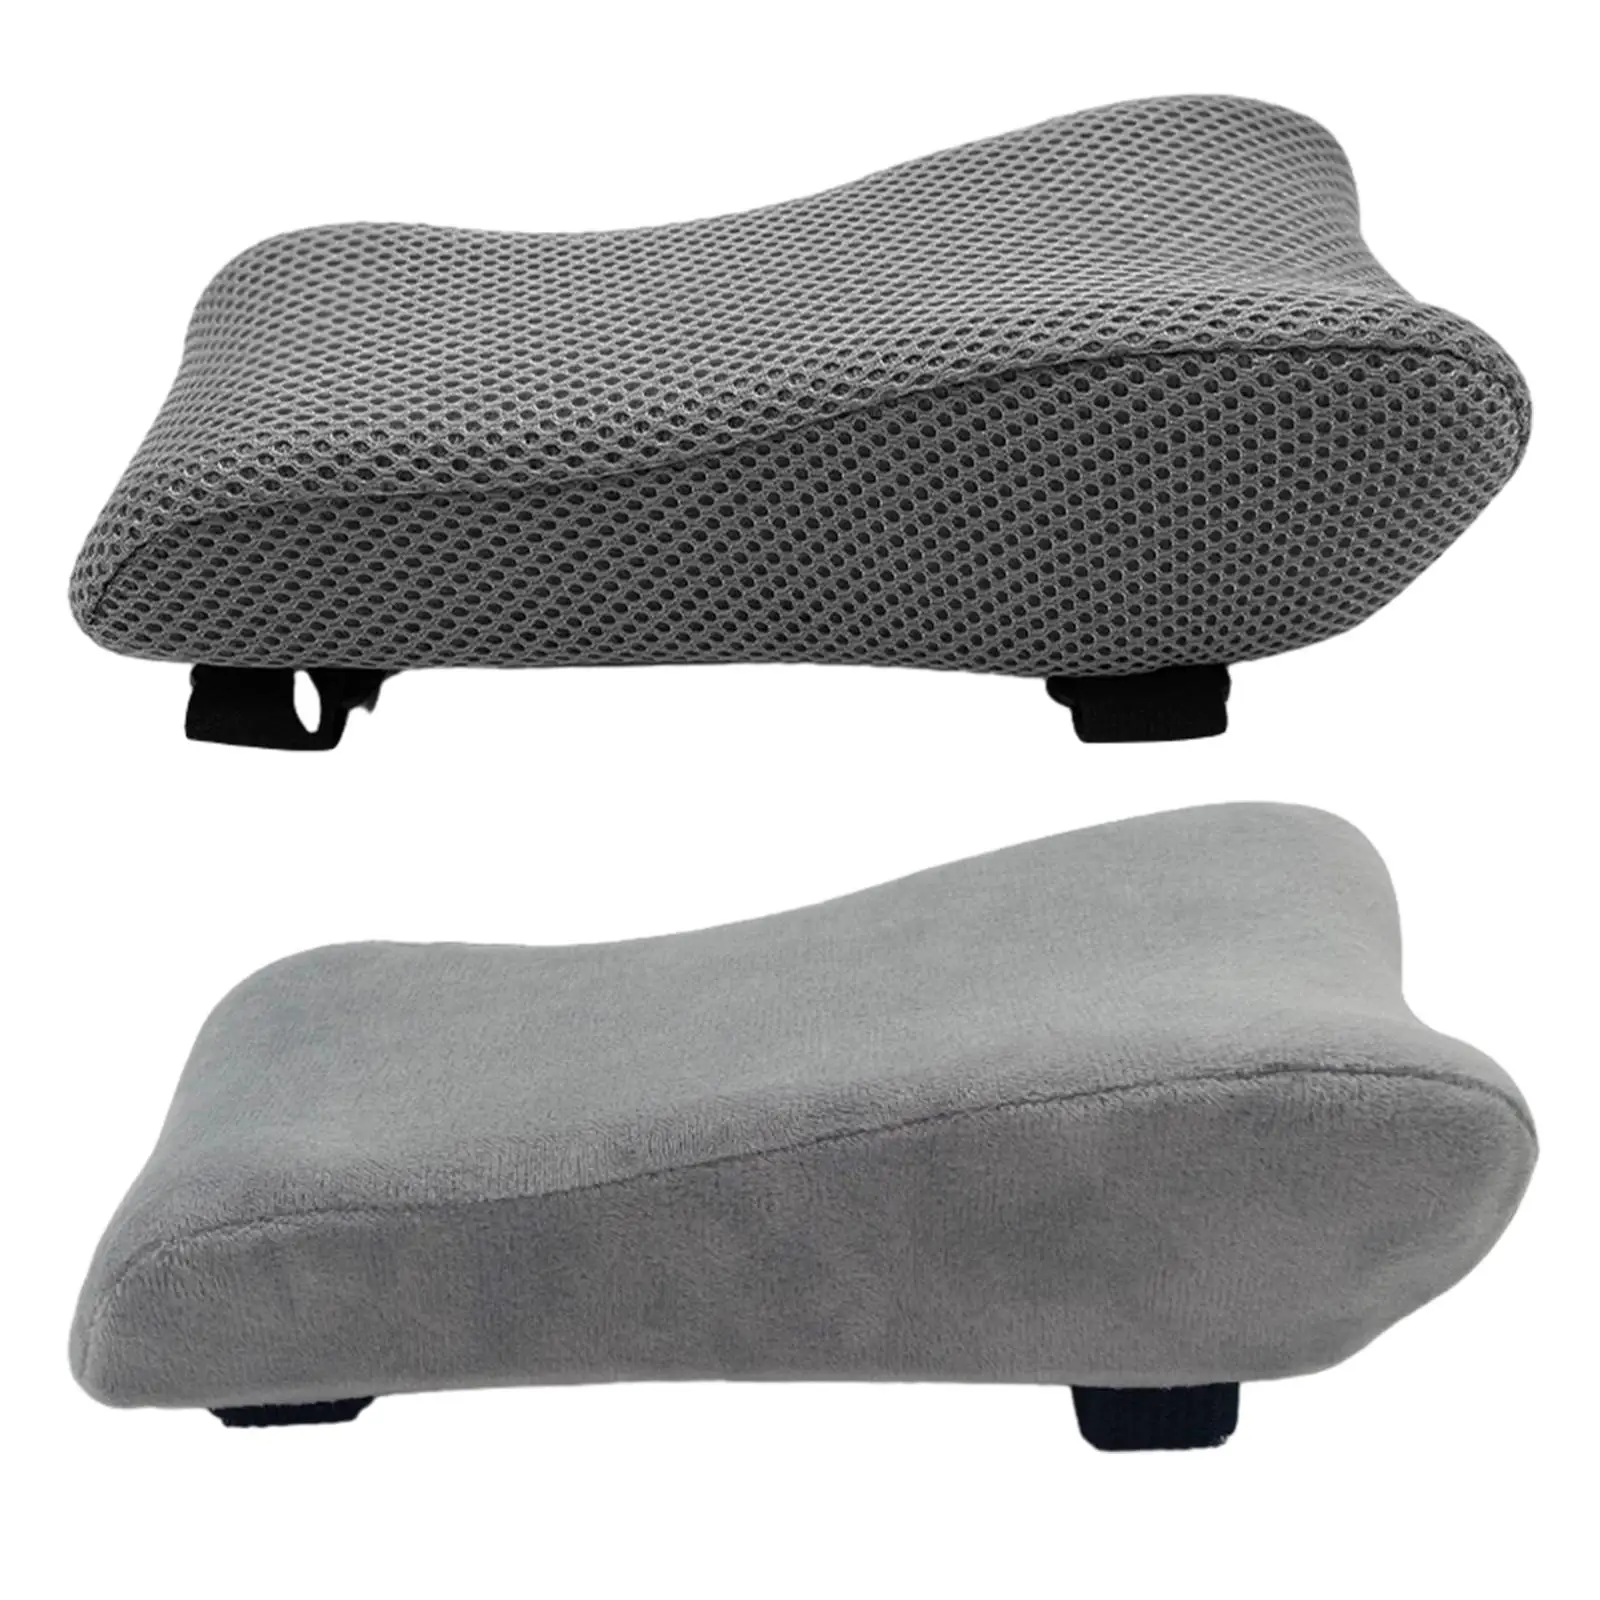 Armrest Pads Office Lightweight Universal Zipper Cover Chair Arm Rest Pillow